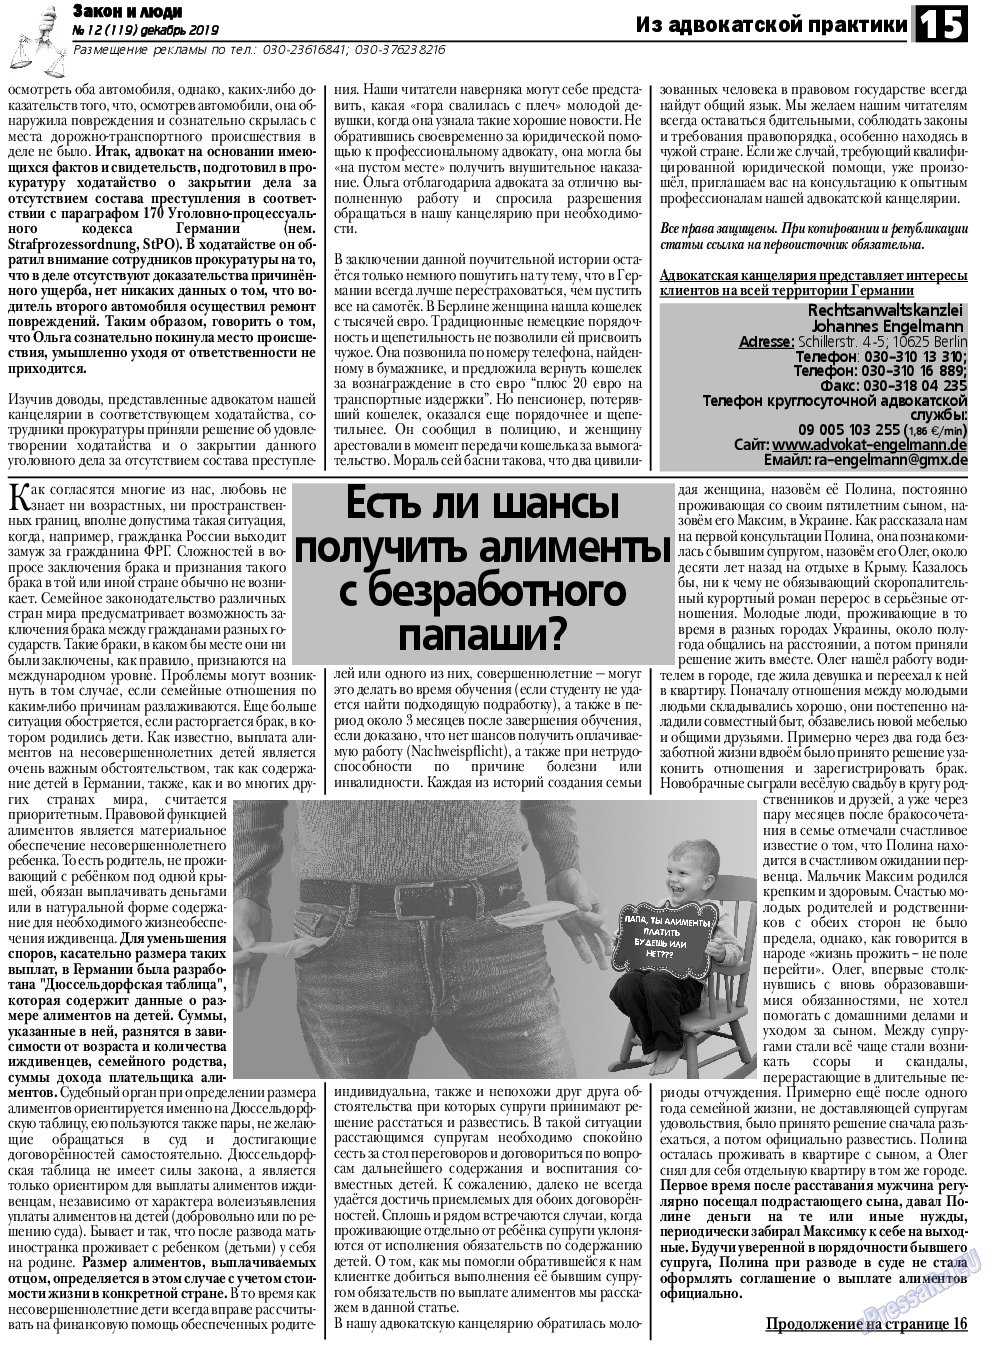 Закон и люди, газета. 2019 №12 стр.15